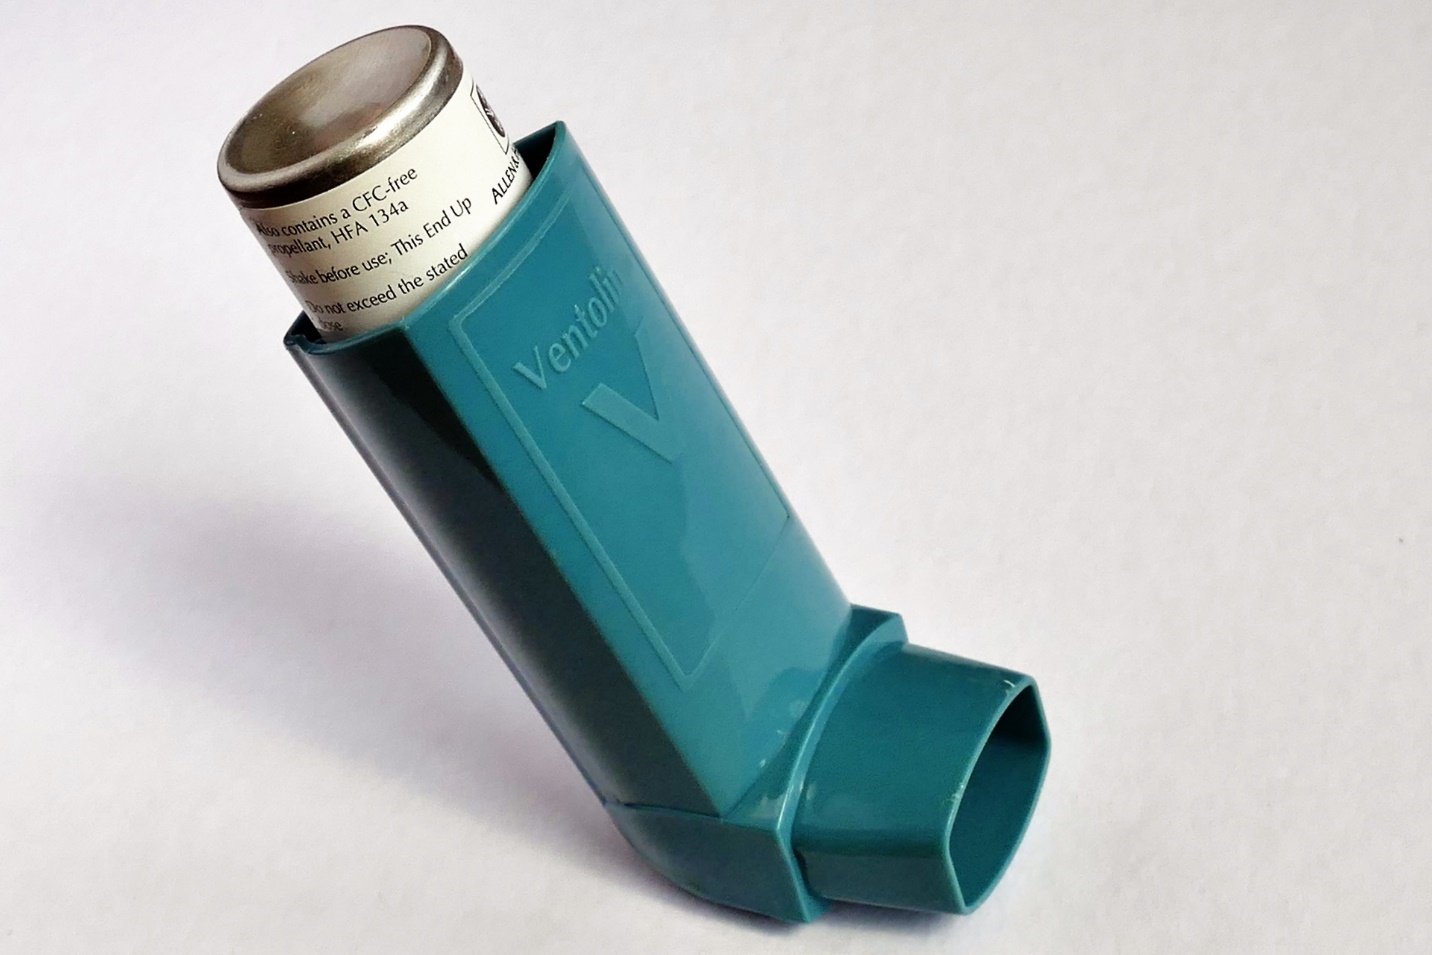 An asthma inhaler.